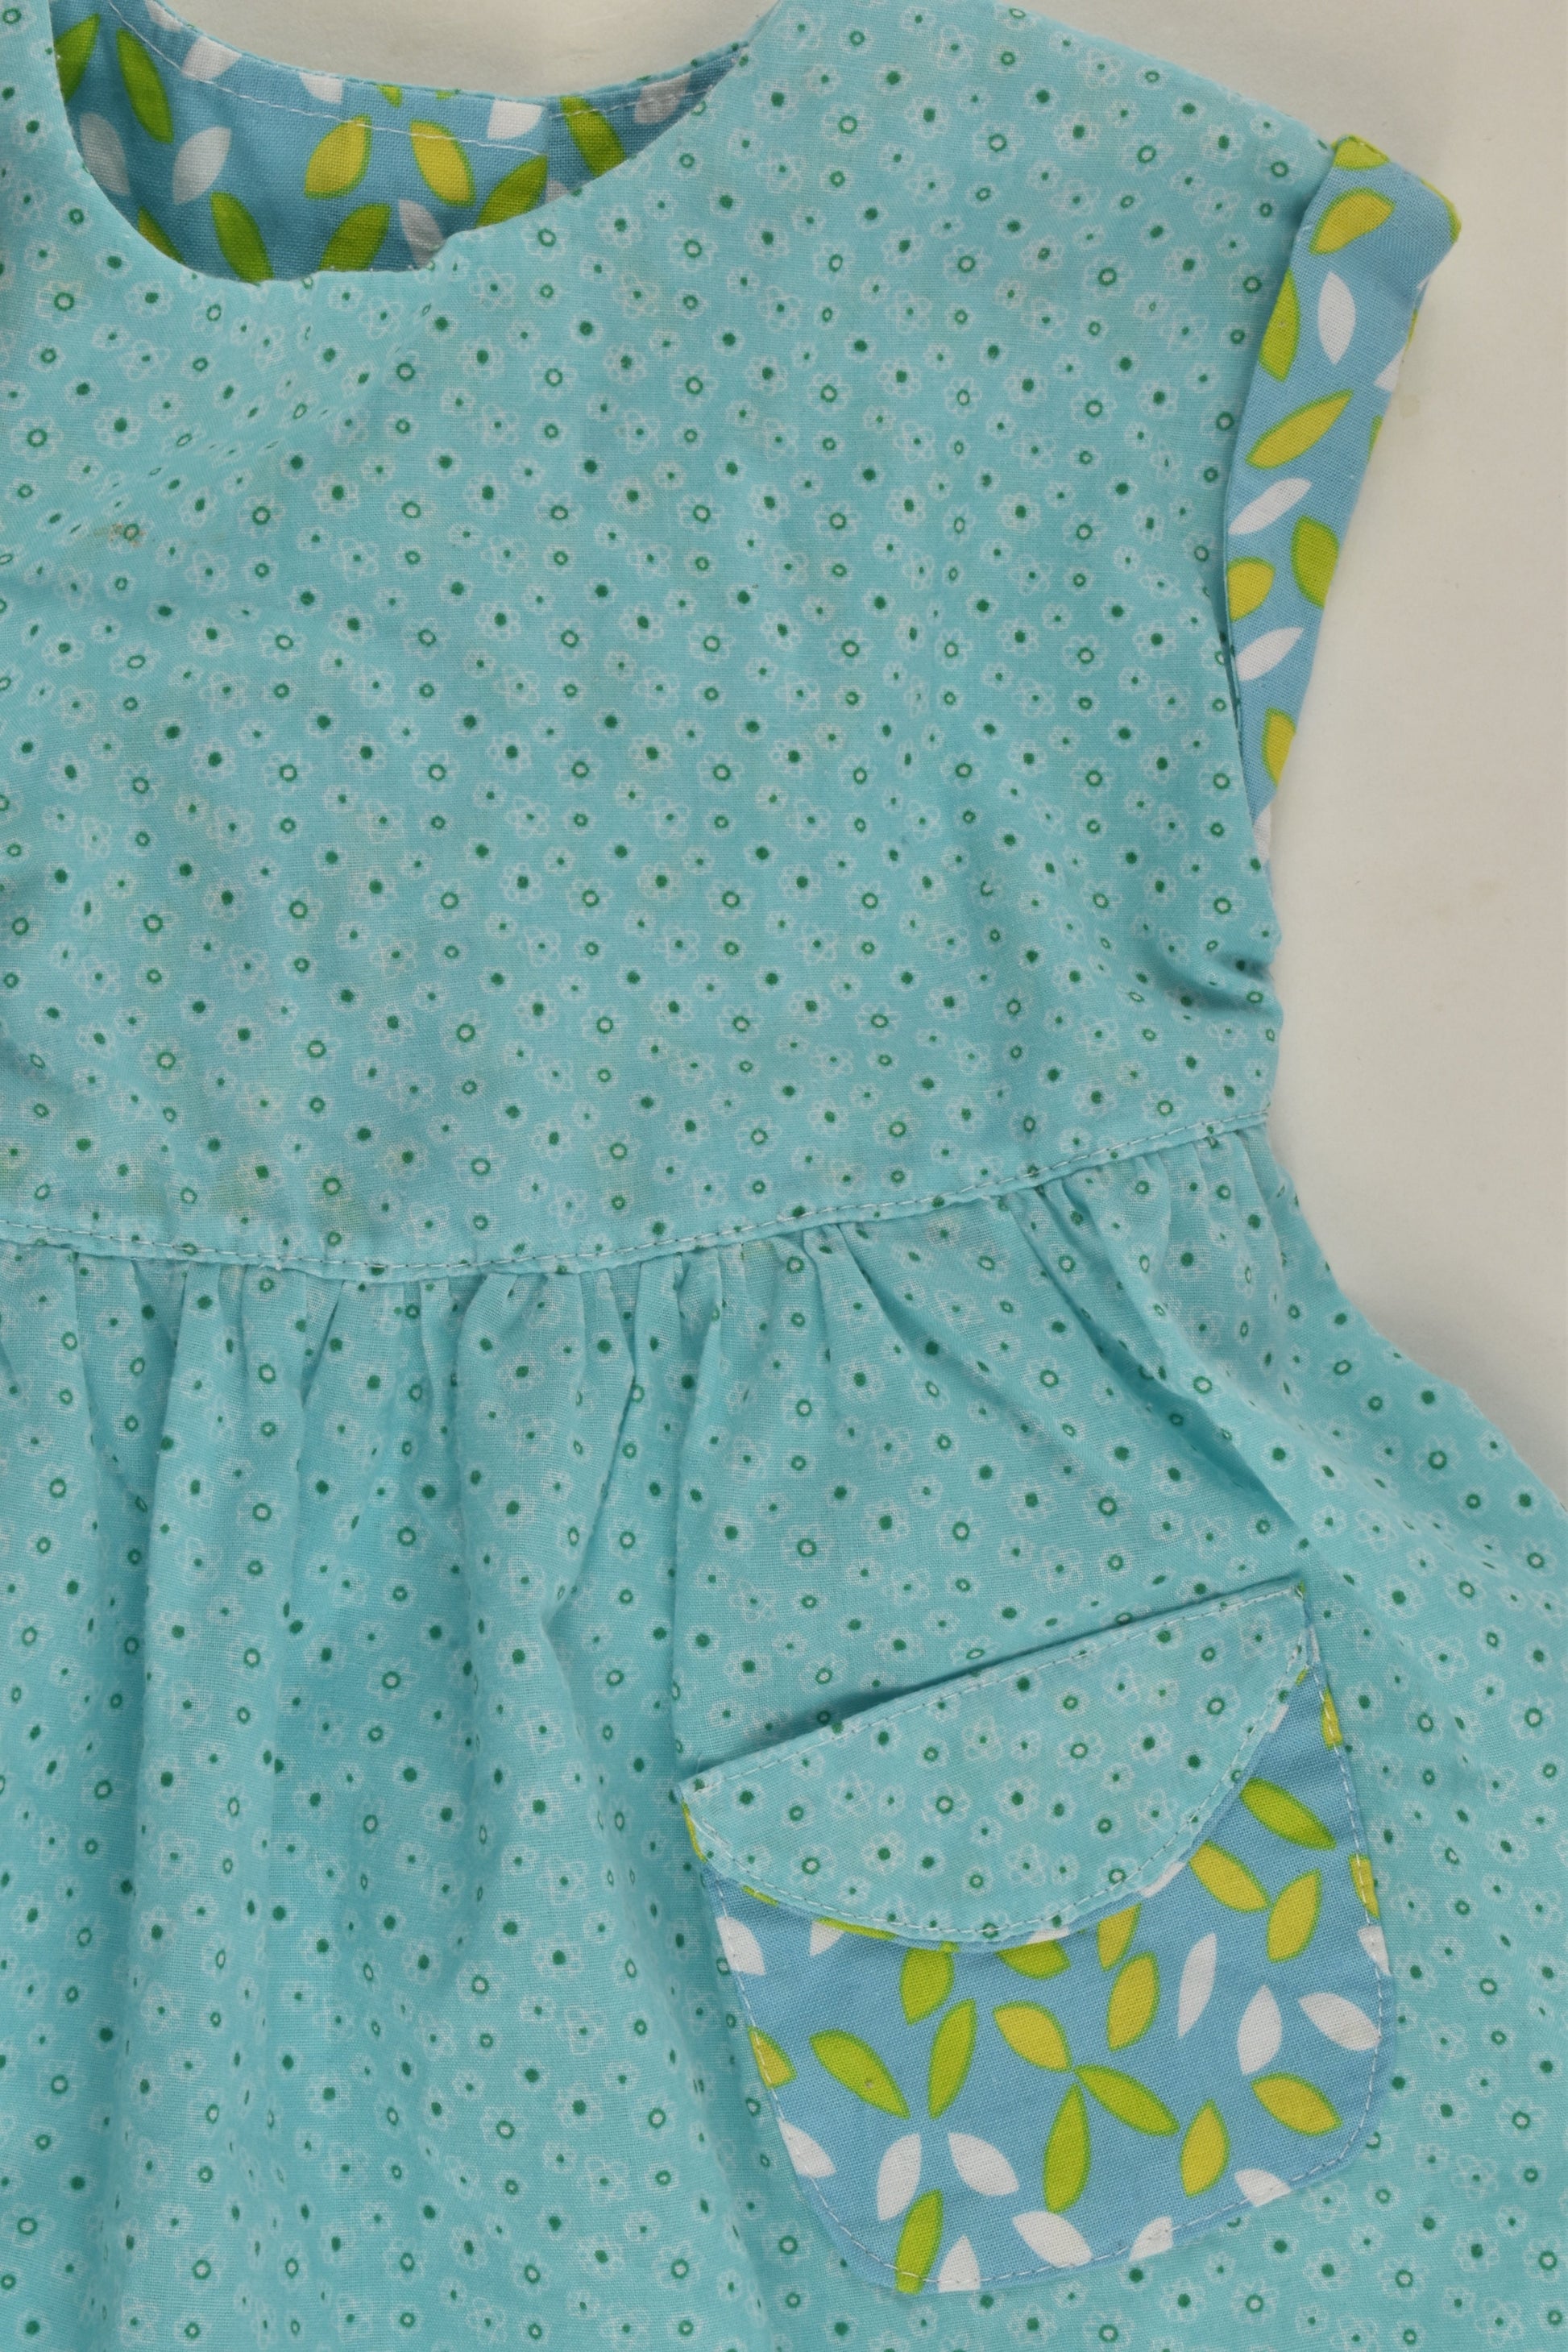 Handmade Size approx 0-1 Dress